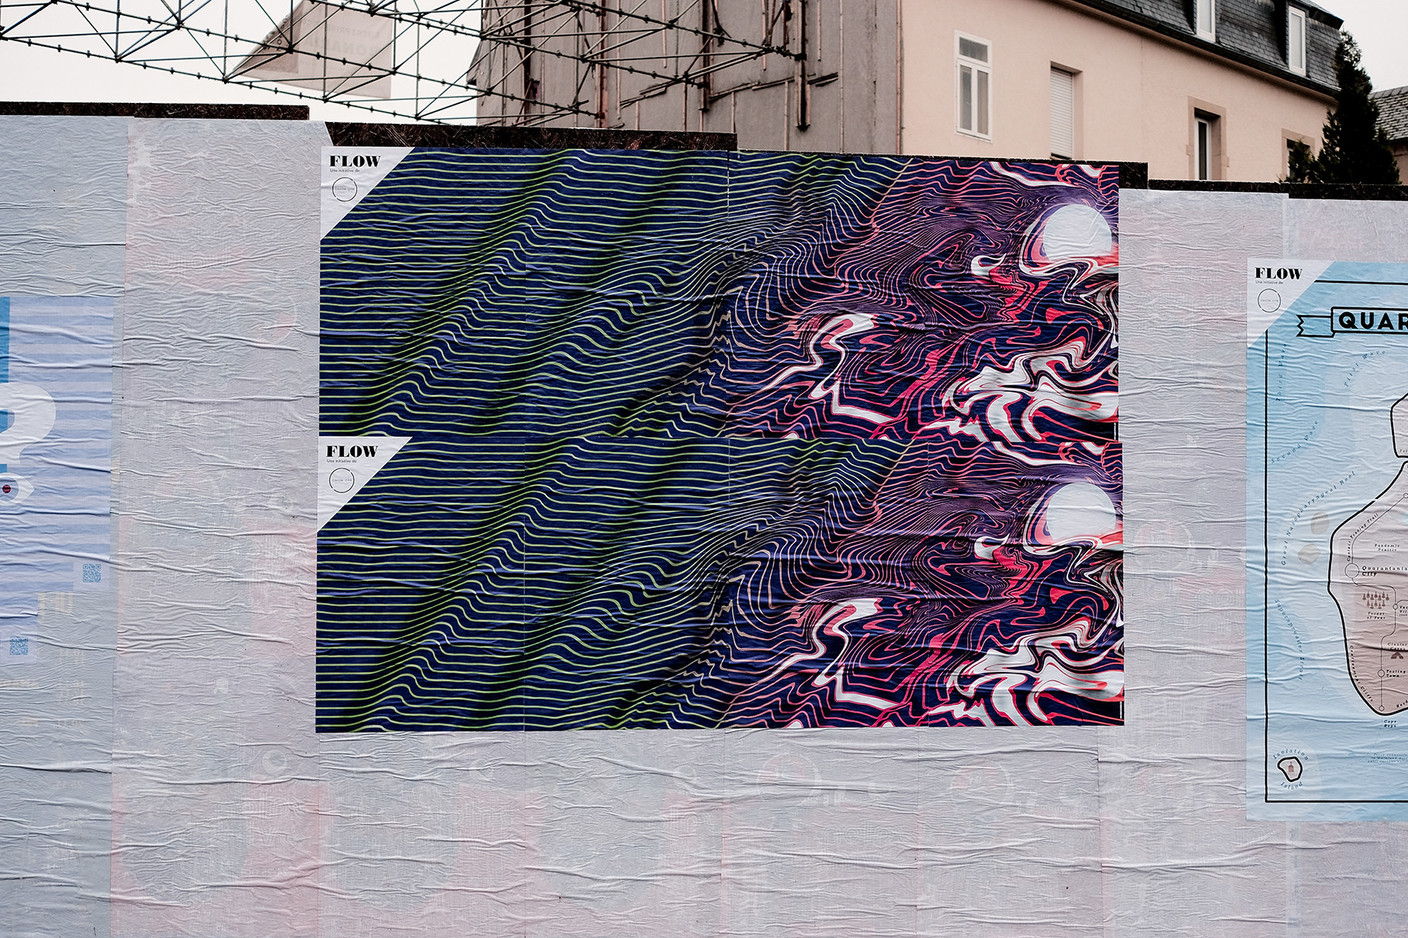 Michel Welfringer s’est inspiré des drapeaux maritimes et des couleurs de l’artiste Murakami. (Photo: Cercle Cité-Iyoshi Kreutz)